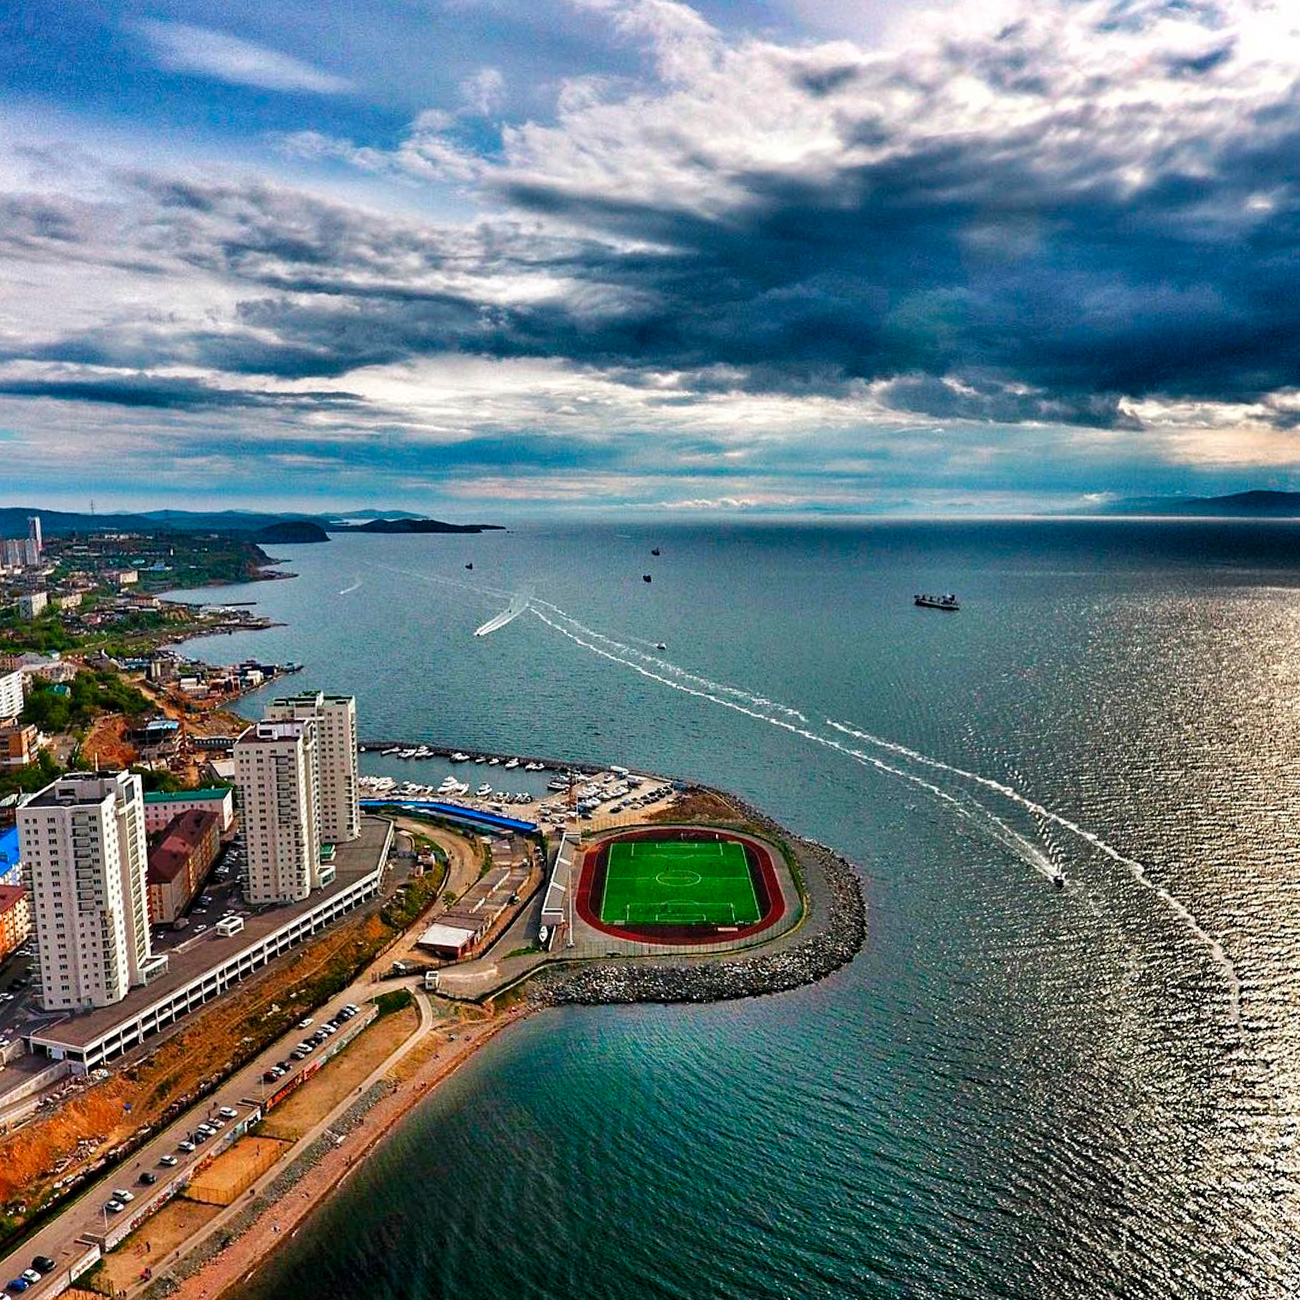 Гледајући из птичије перспективе, ивица Куперовог Рта где је стадион саграђен, подсећа на зелену тачку која раздваја воду Амурског залива од стамбених четврти Владивостока. Нови стадион окружен је са три стране водом.  